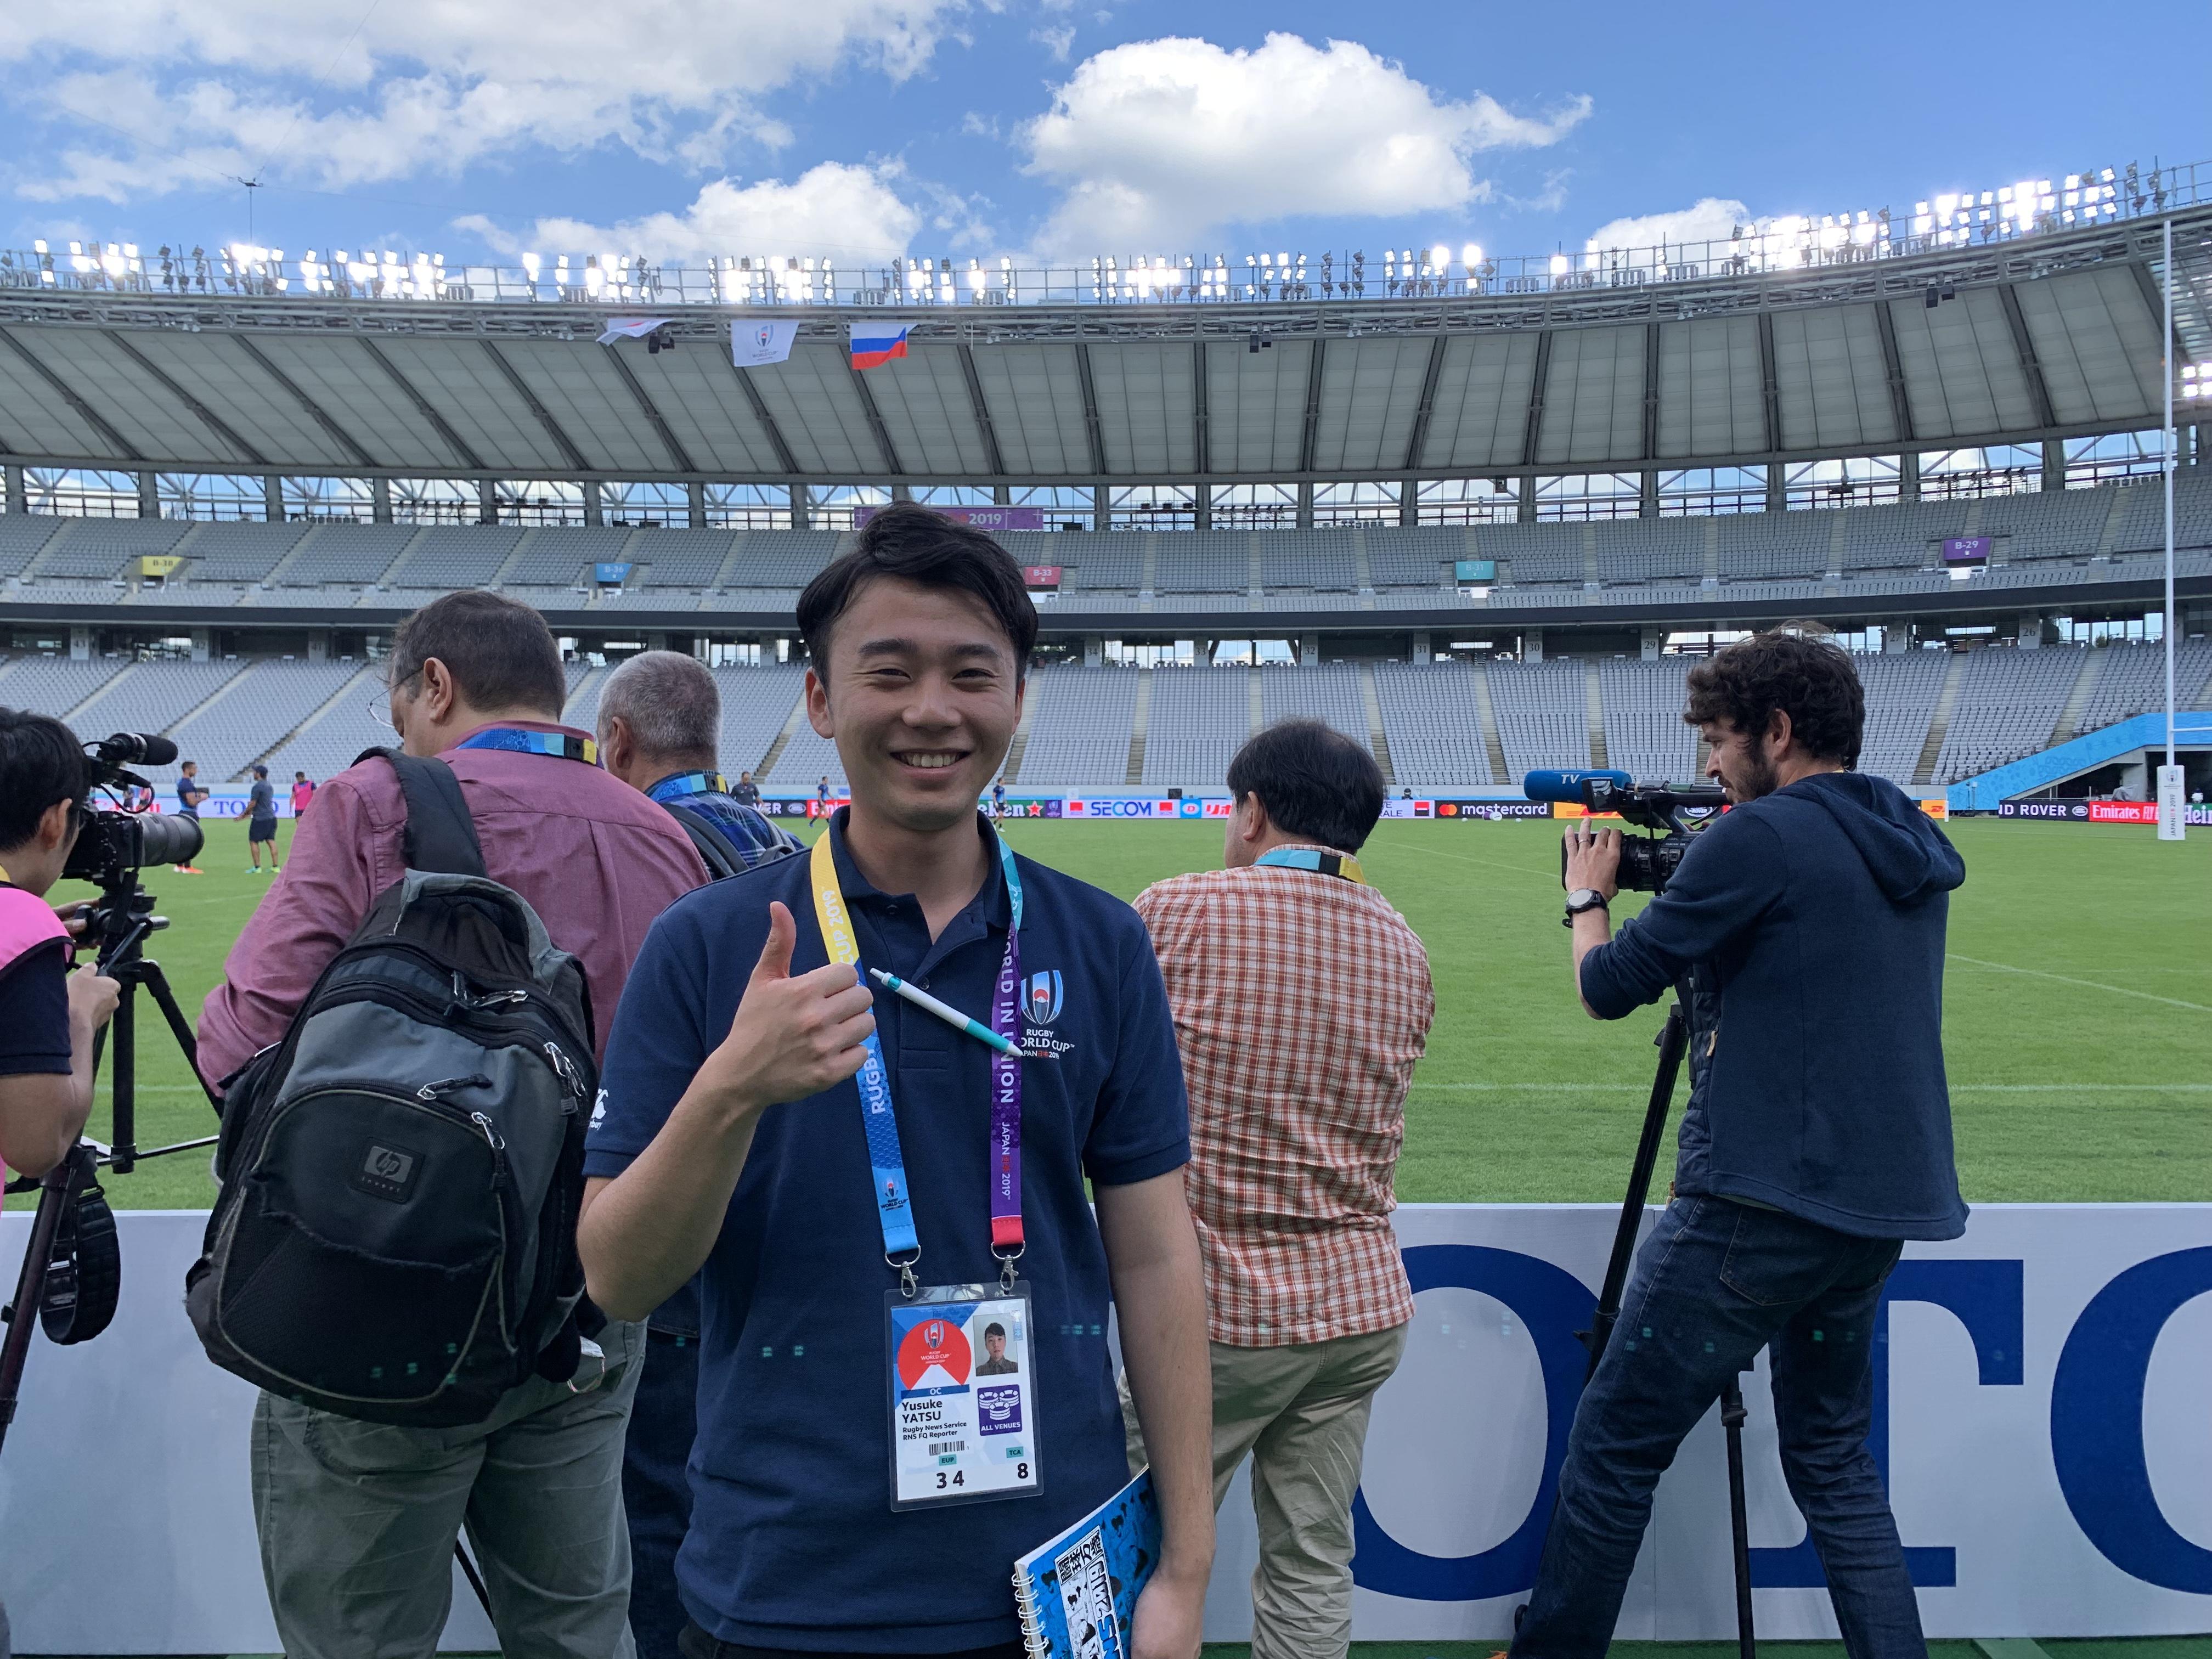 神田外語大学の学生がラグビーワールドカップ（TM）2019日本大会で、ボランティアとして言語サービス、メディア対応、ファンゾーンでの来場客誘導などさまざまな場面で活躍しました